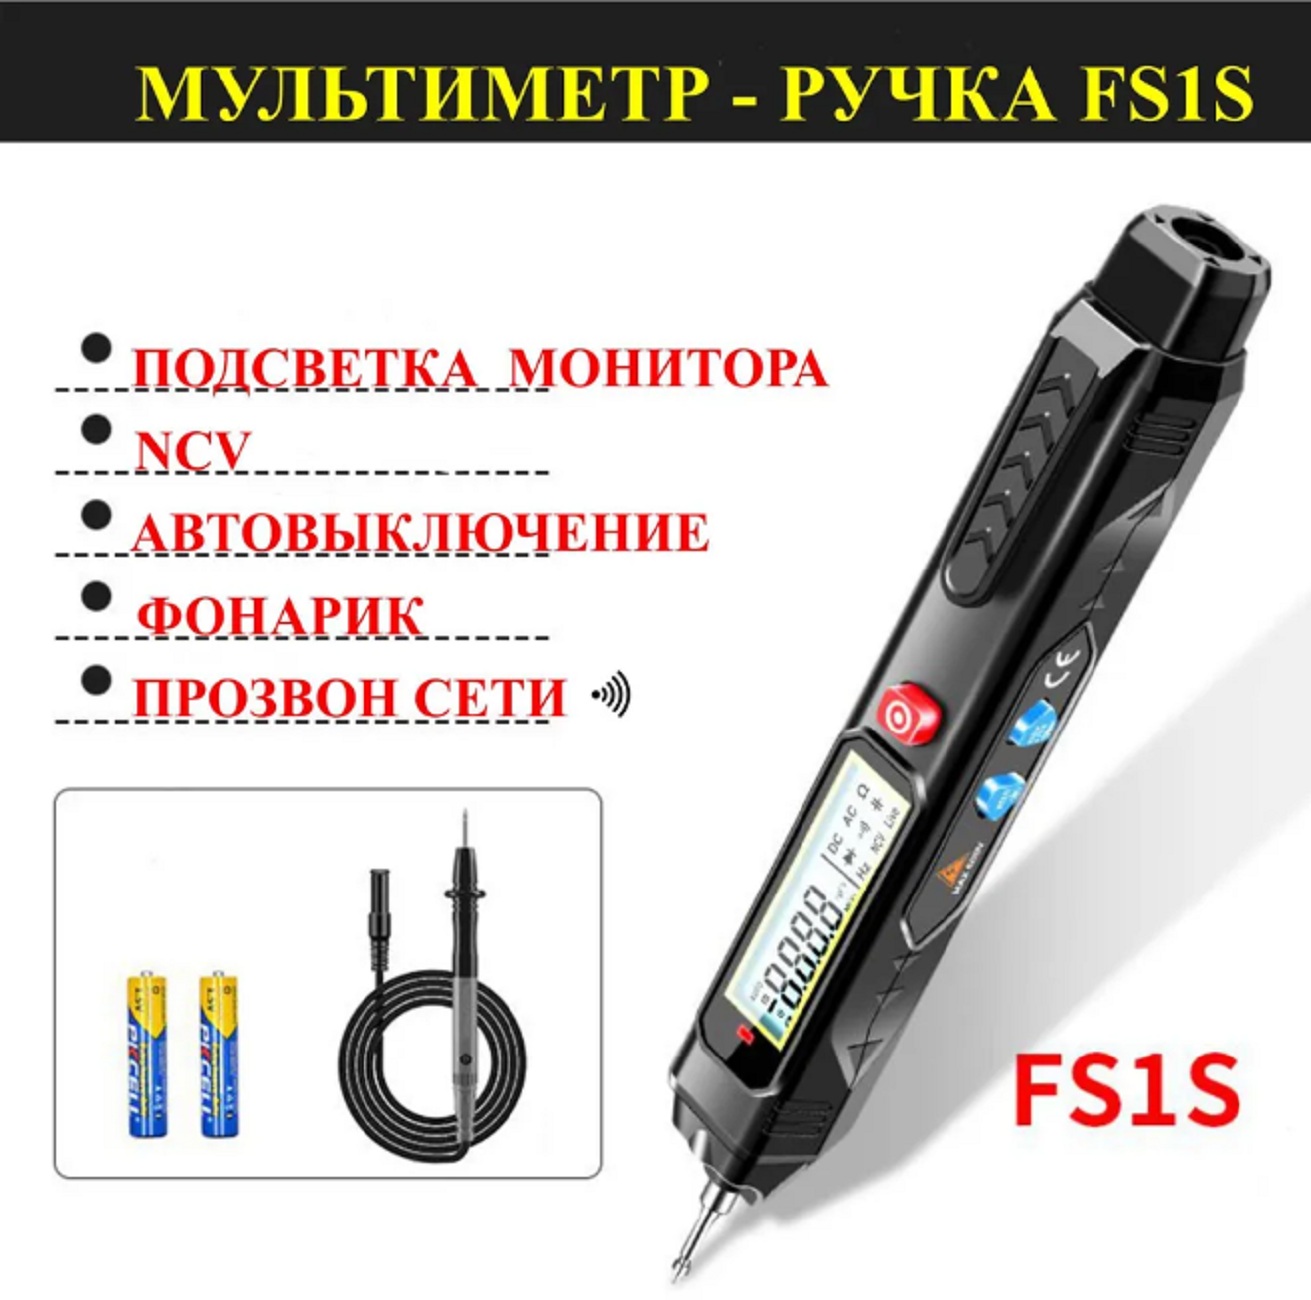 Мультиметр ЗВЕЗДА ручка измерение FS1S, тестер с ЖК-дисплеем,№3 мультиметр smart smd тестер mastech